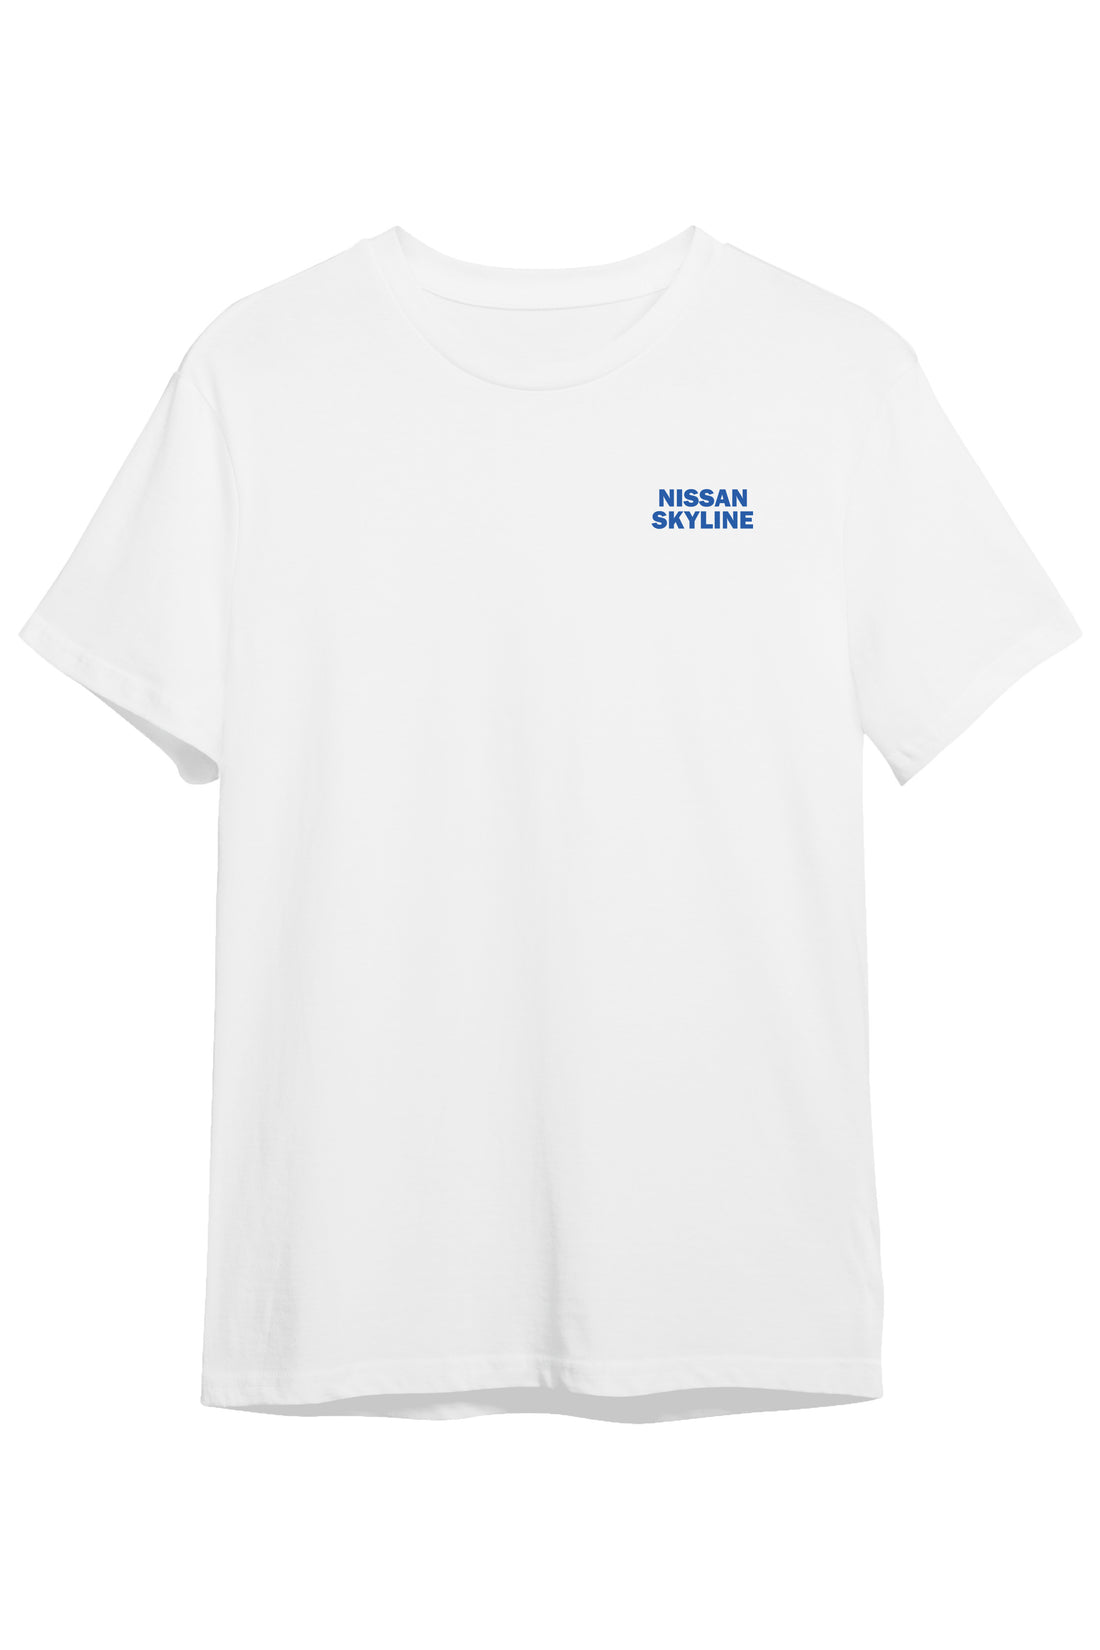 Nissan Skyline Line - Regular Tshirt